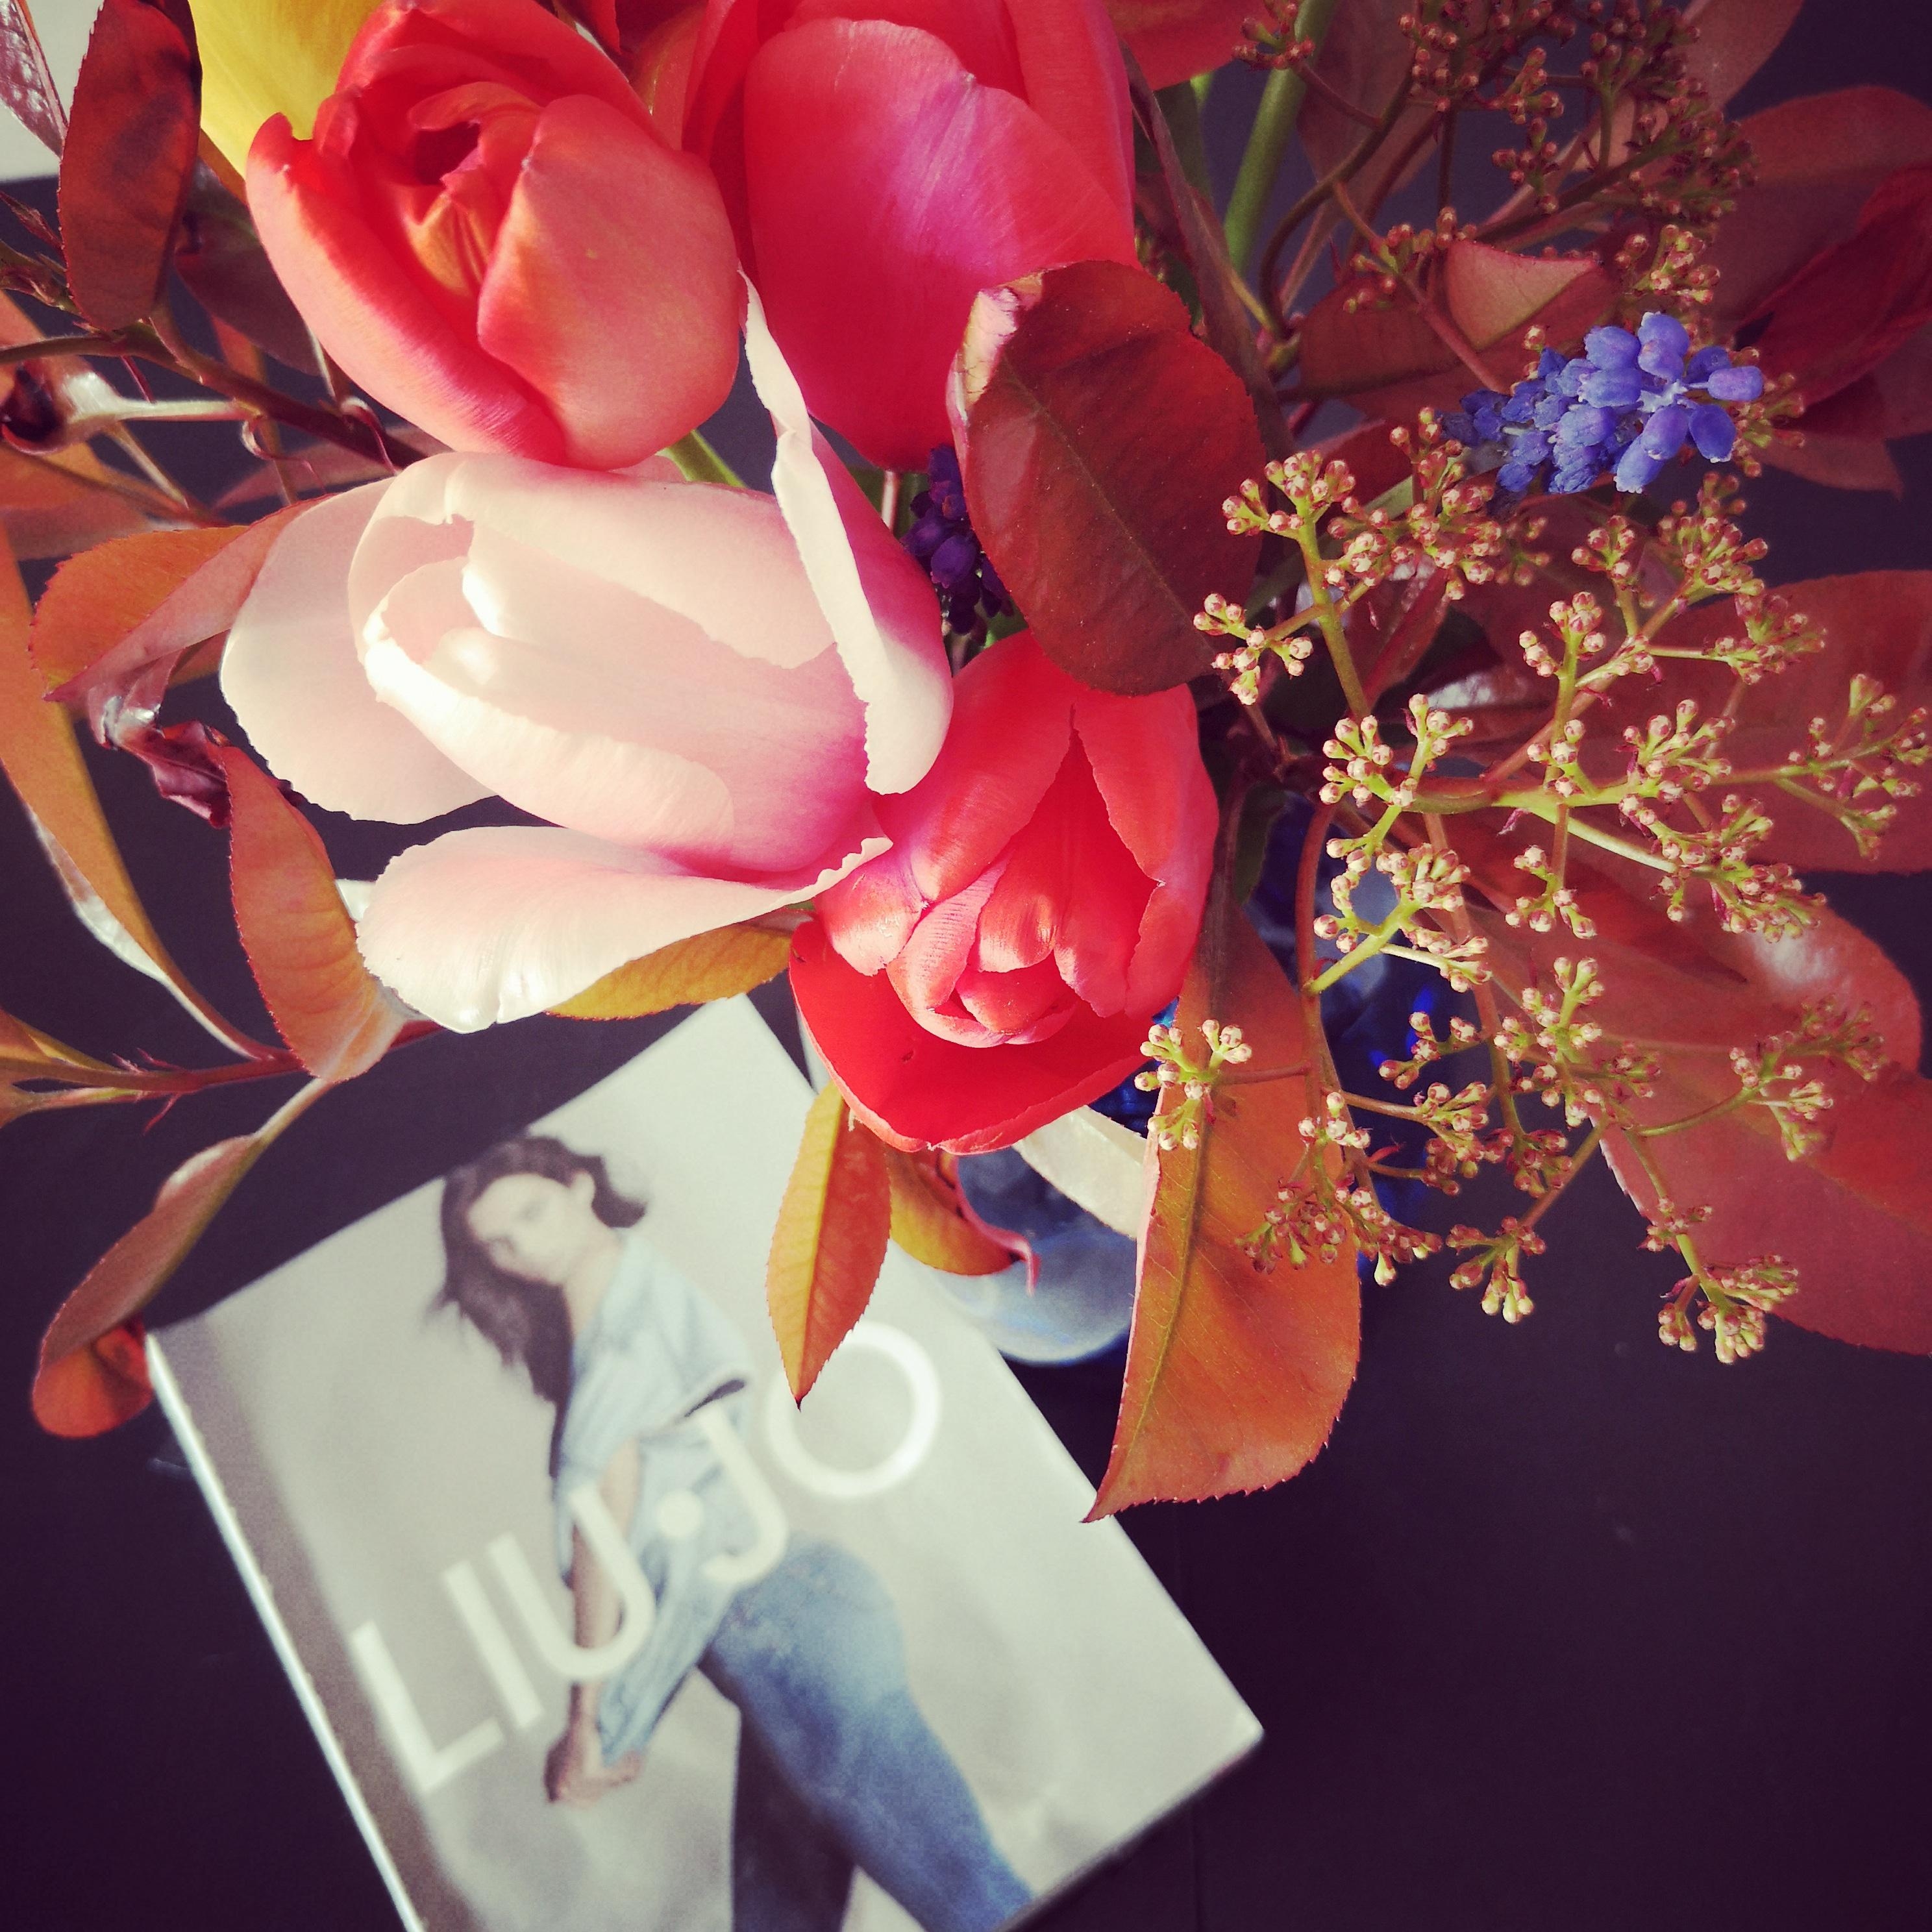 Mein erster selbstgebundener Strauss mit Blumen o. Ä. aus unserem Garten...😃🤗
#diy #tulpen #lesen